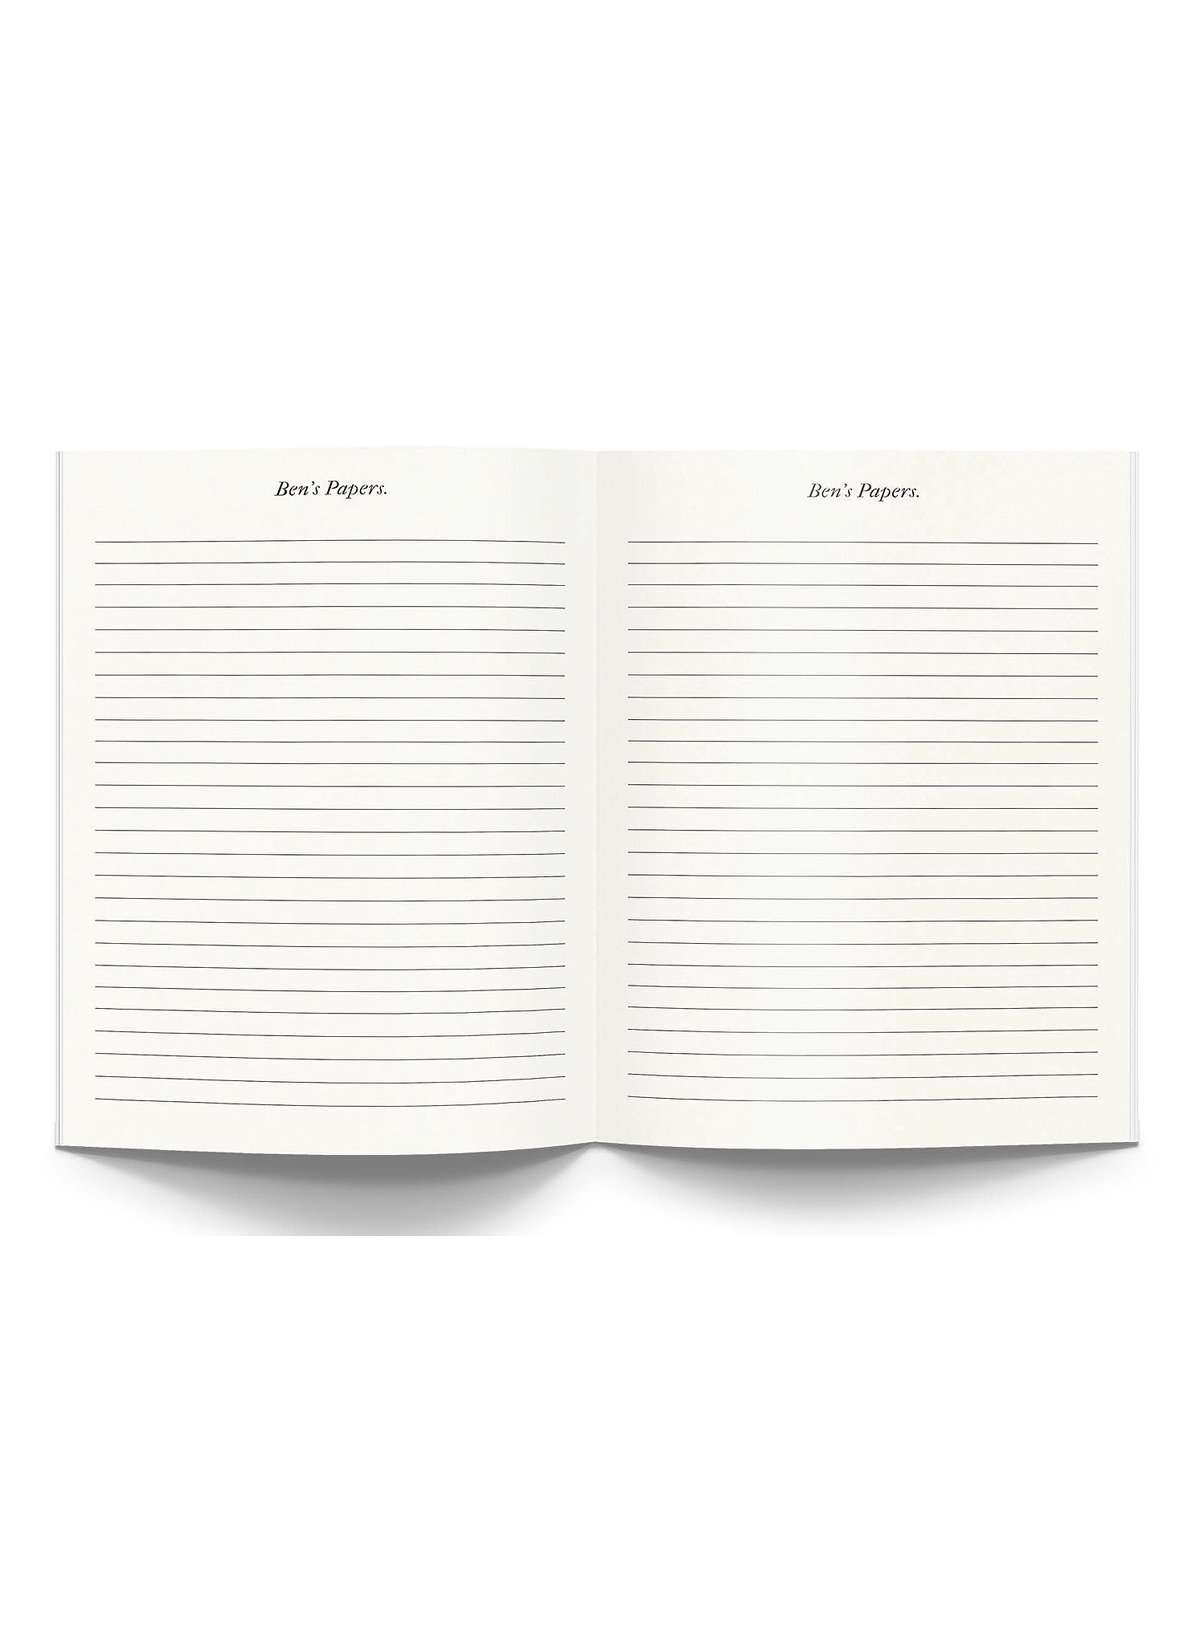 Bensgarden.com | Keep Going Silver Foil Memoir Notebook Journal - Ben's Garden. Made in New York City.